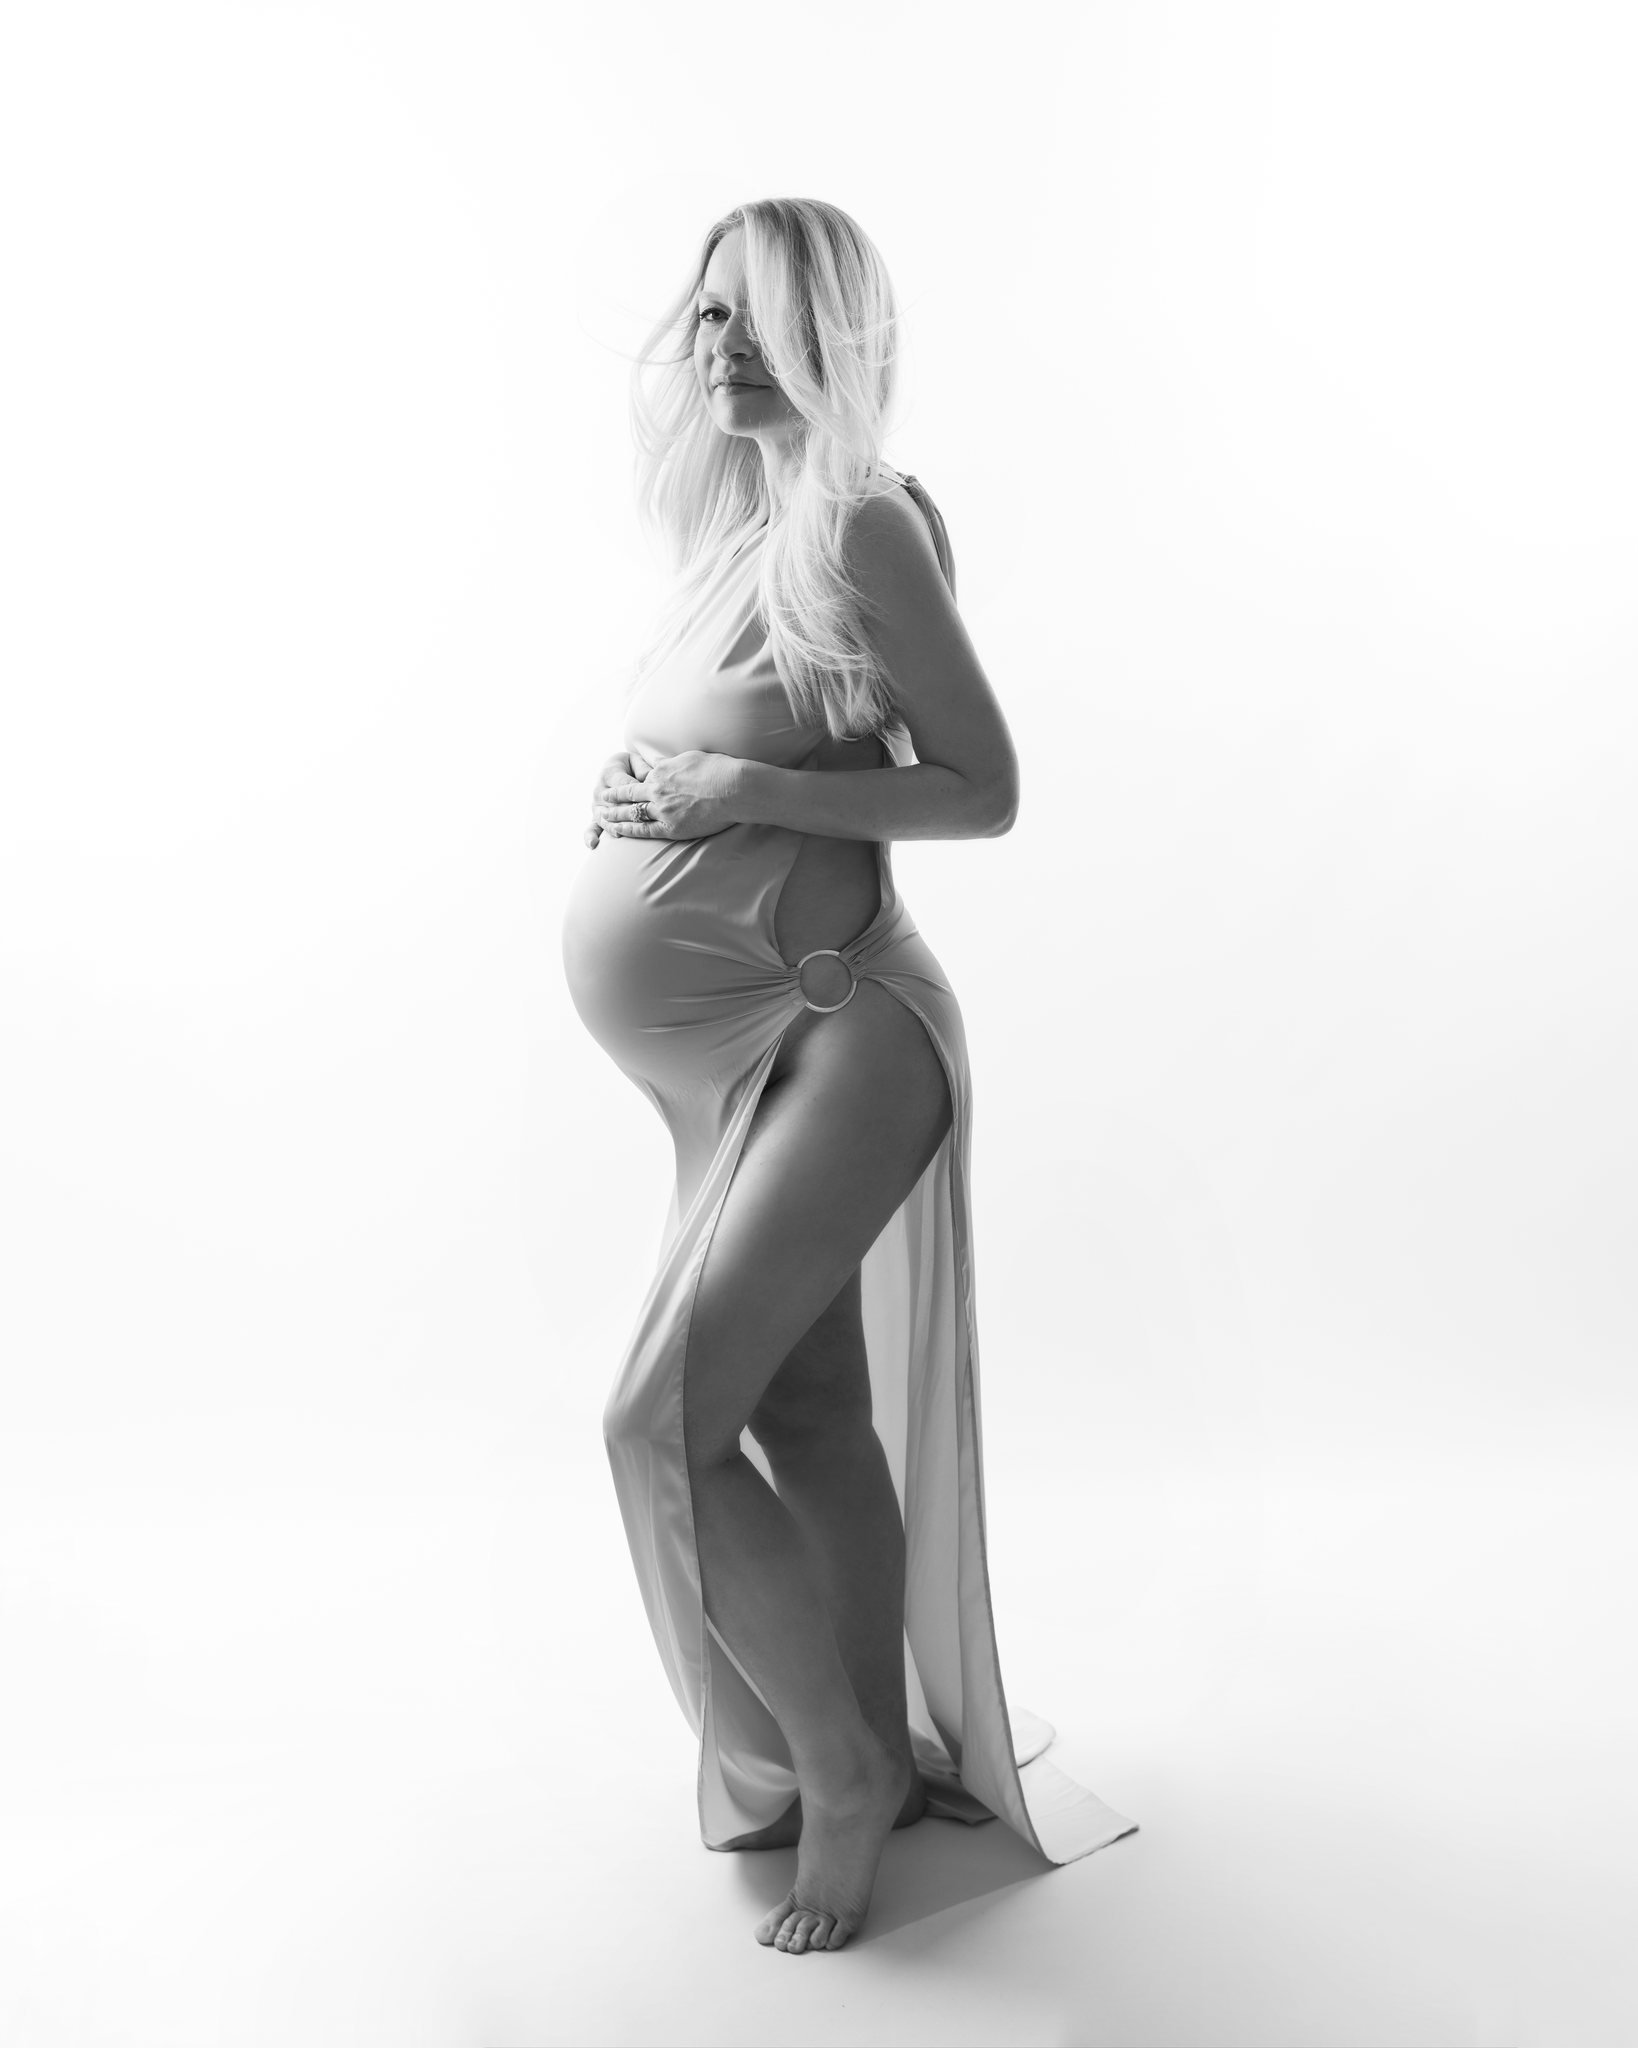 Maternity Photoshoot by @anjezadyrmishi
#maternityphotography #maternityshoot #maternityphotographernearme
#pregnancy #maternityphotoshoot #maternity #maternityphotography #maternityphotoshoot #maternitypictures #maternityphotographer #maternityphoto